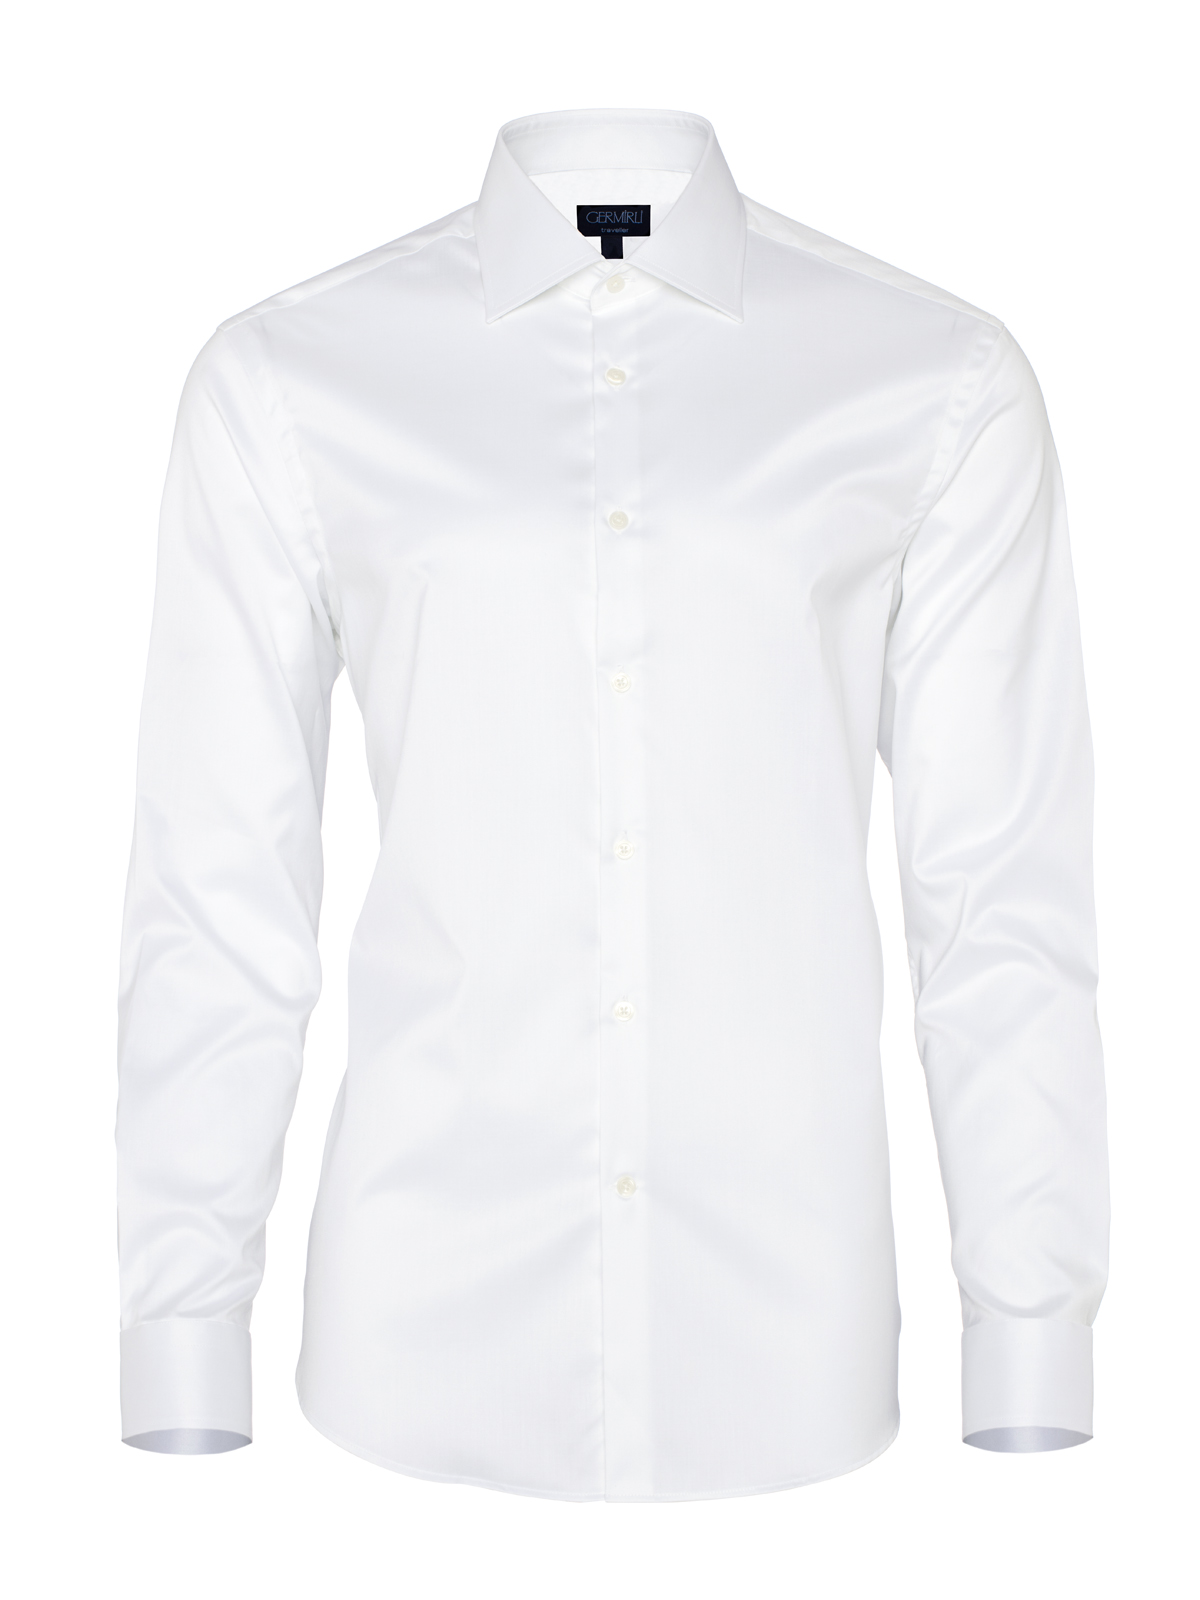 Germirli - Germirli Non Iron Beyaz Twill Klasik Yaka Tailor Fit Gömlek